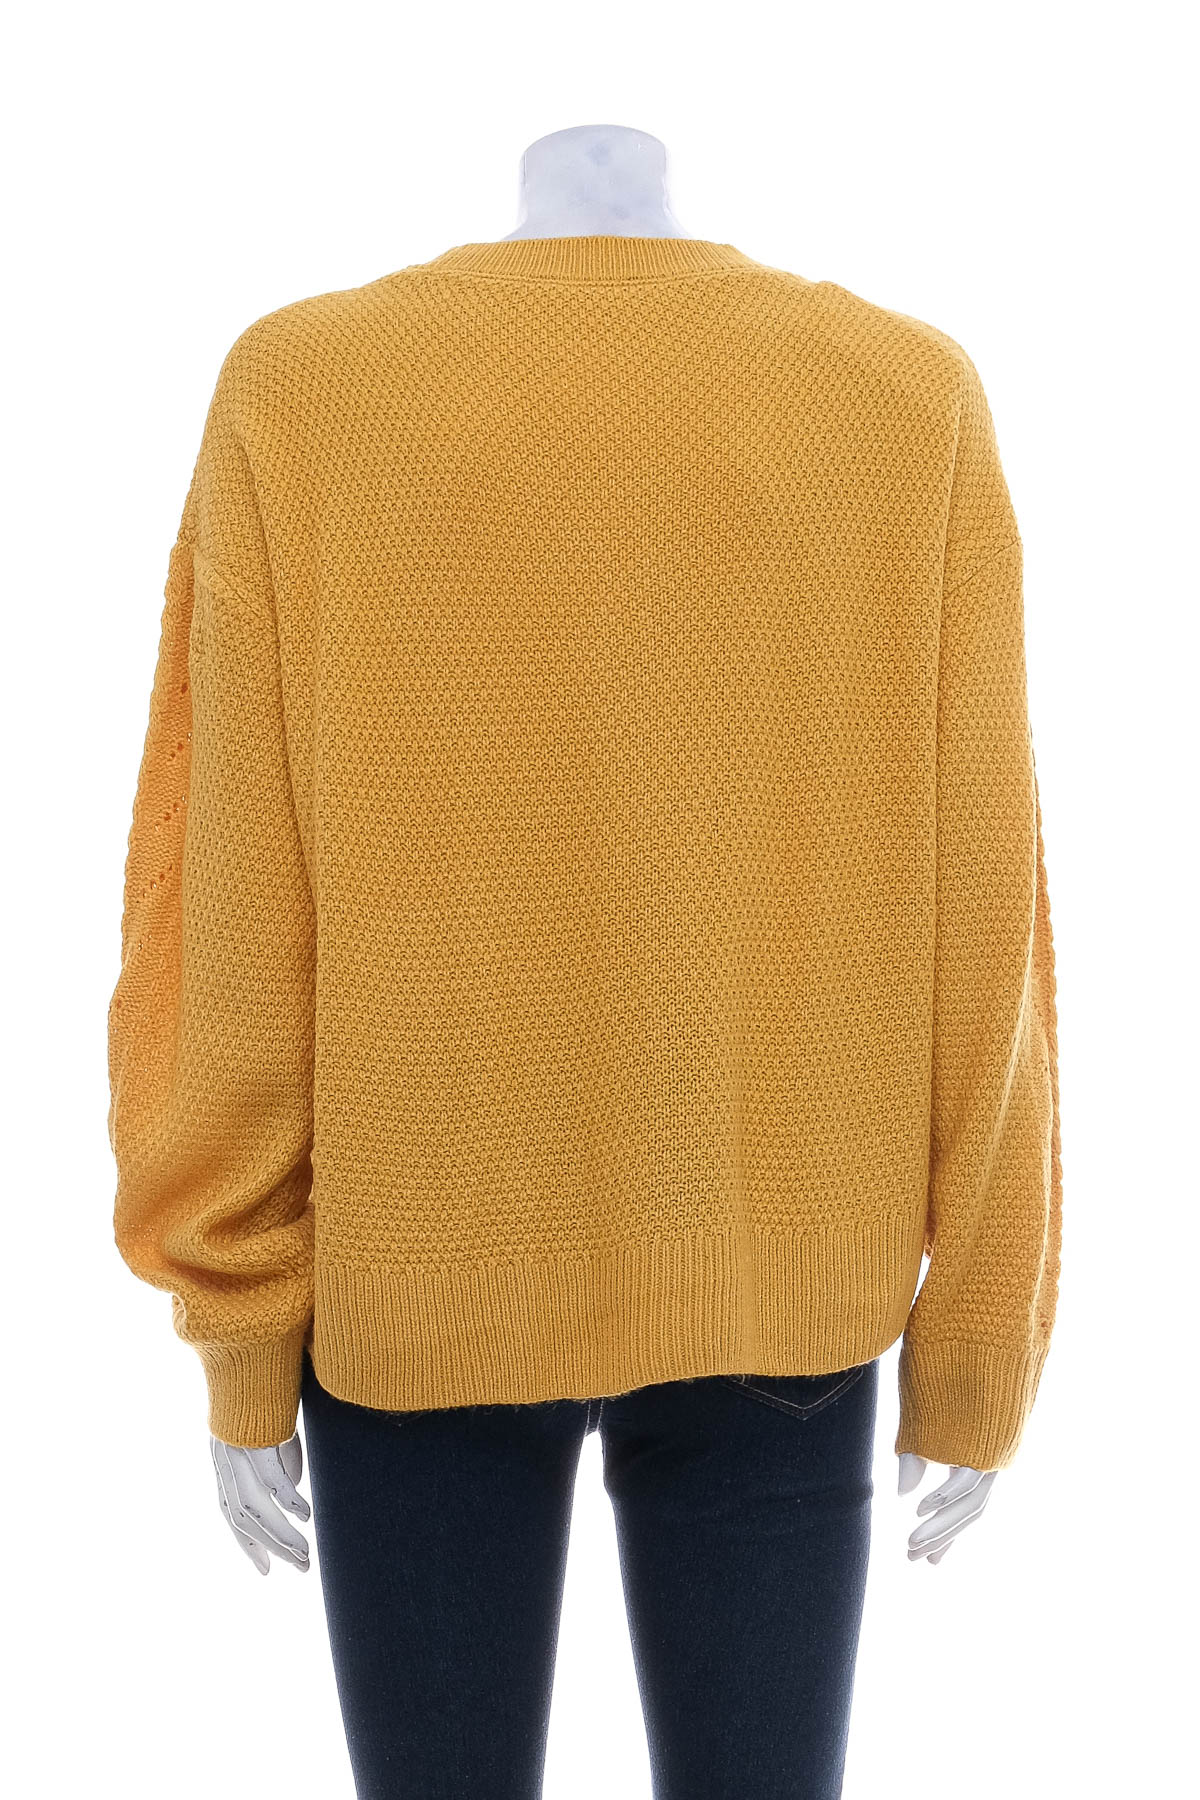 Women's sweater - LIDL - 1